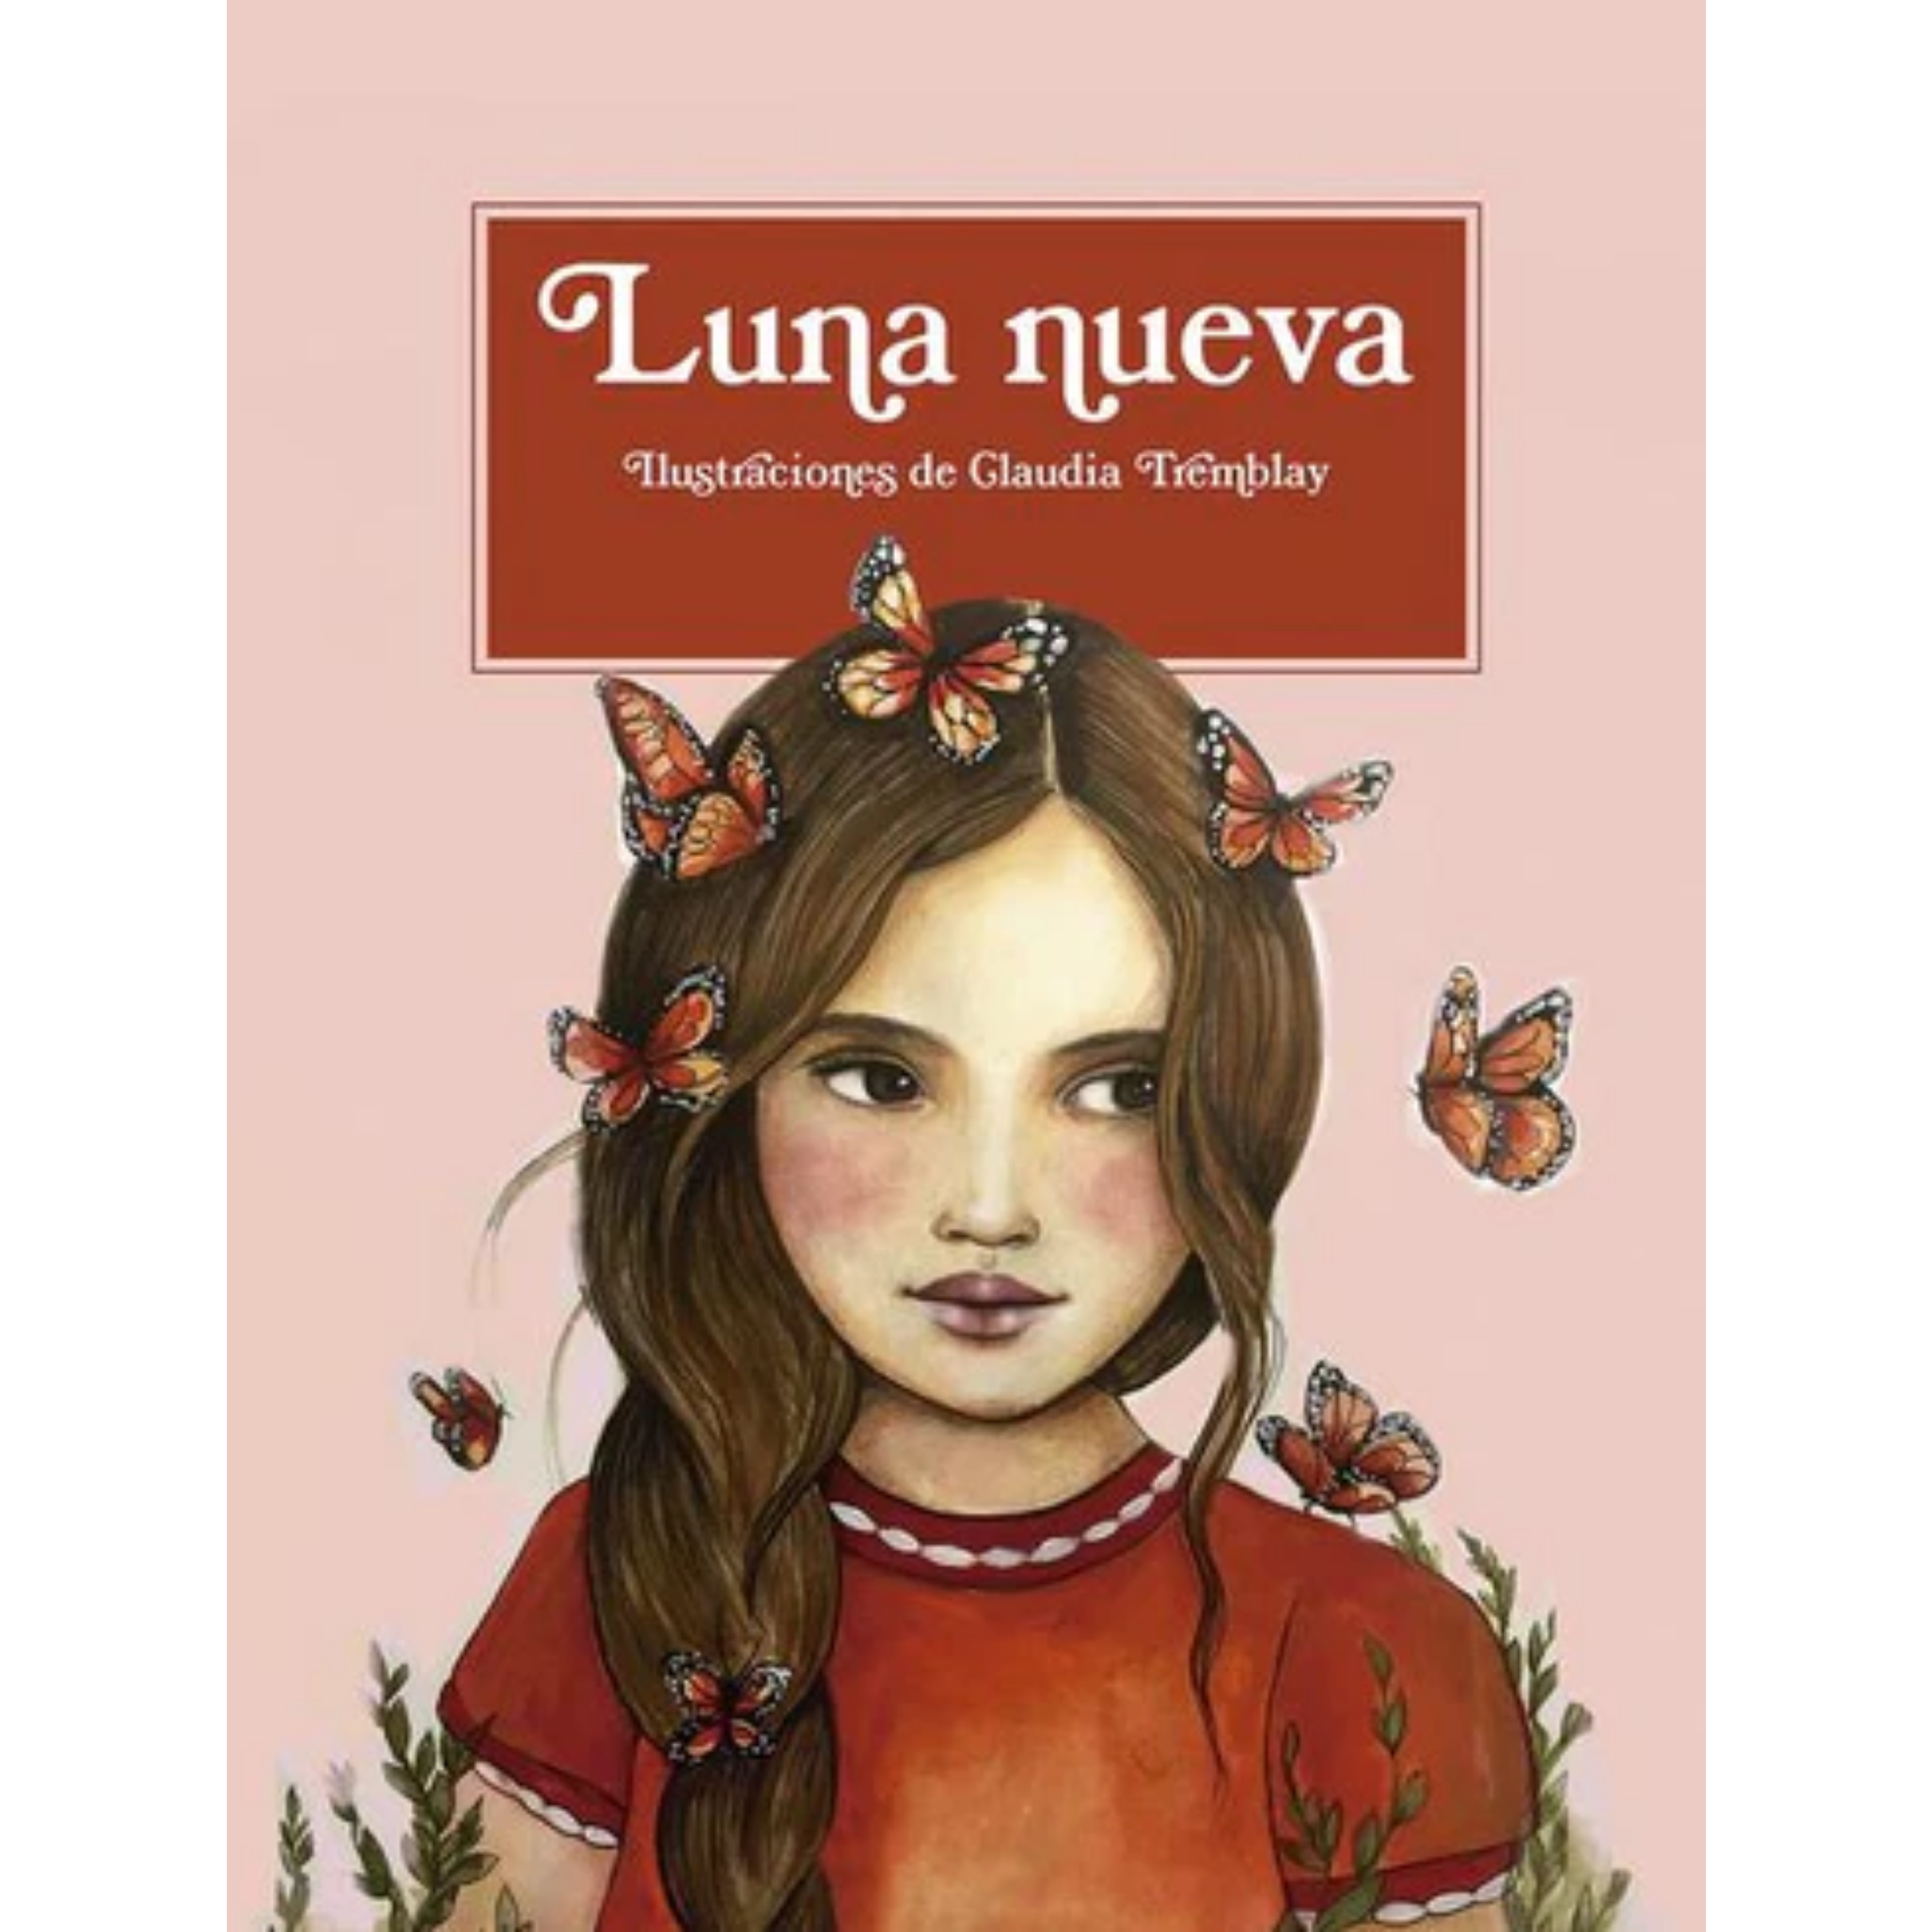 enlazar Gastos de envío Desanimarse Luna nueva de Claudia Tremblay | ING Edicions – ING EDICIONS